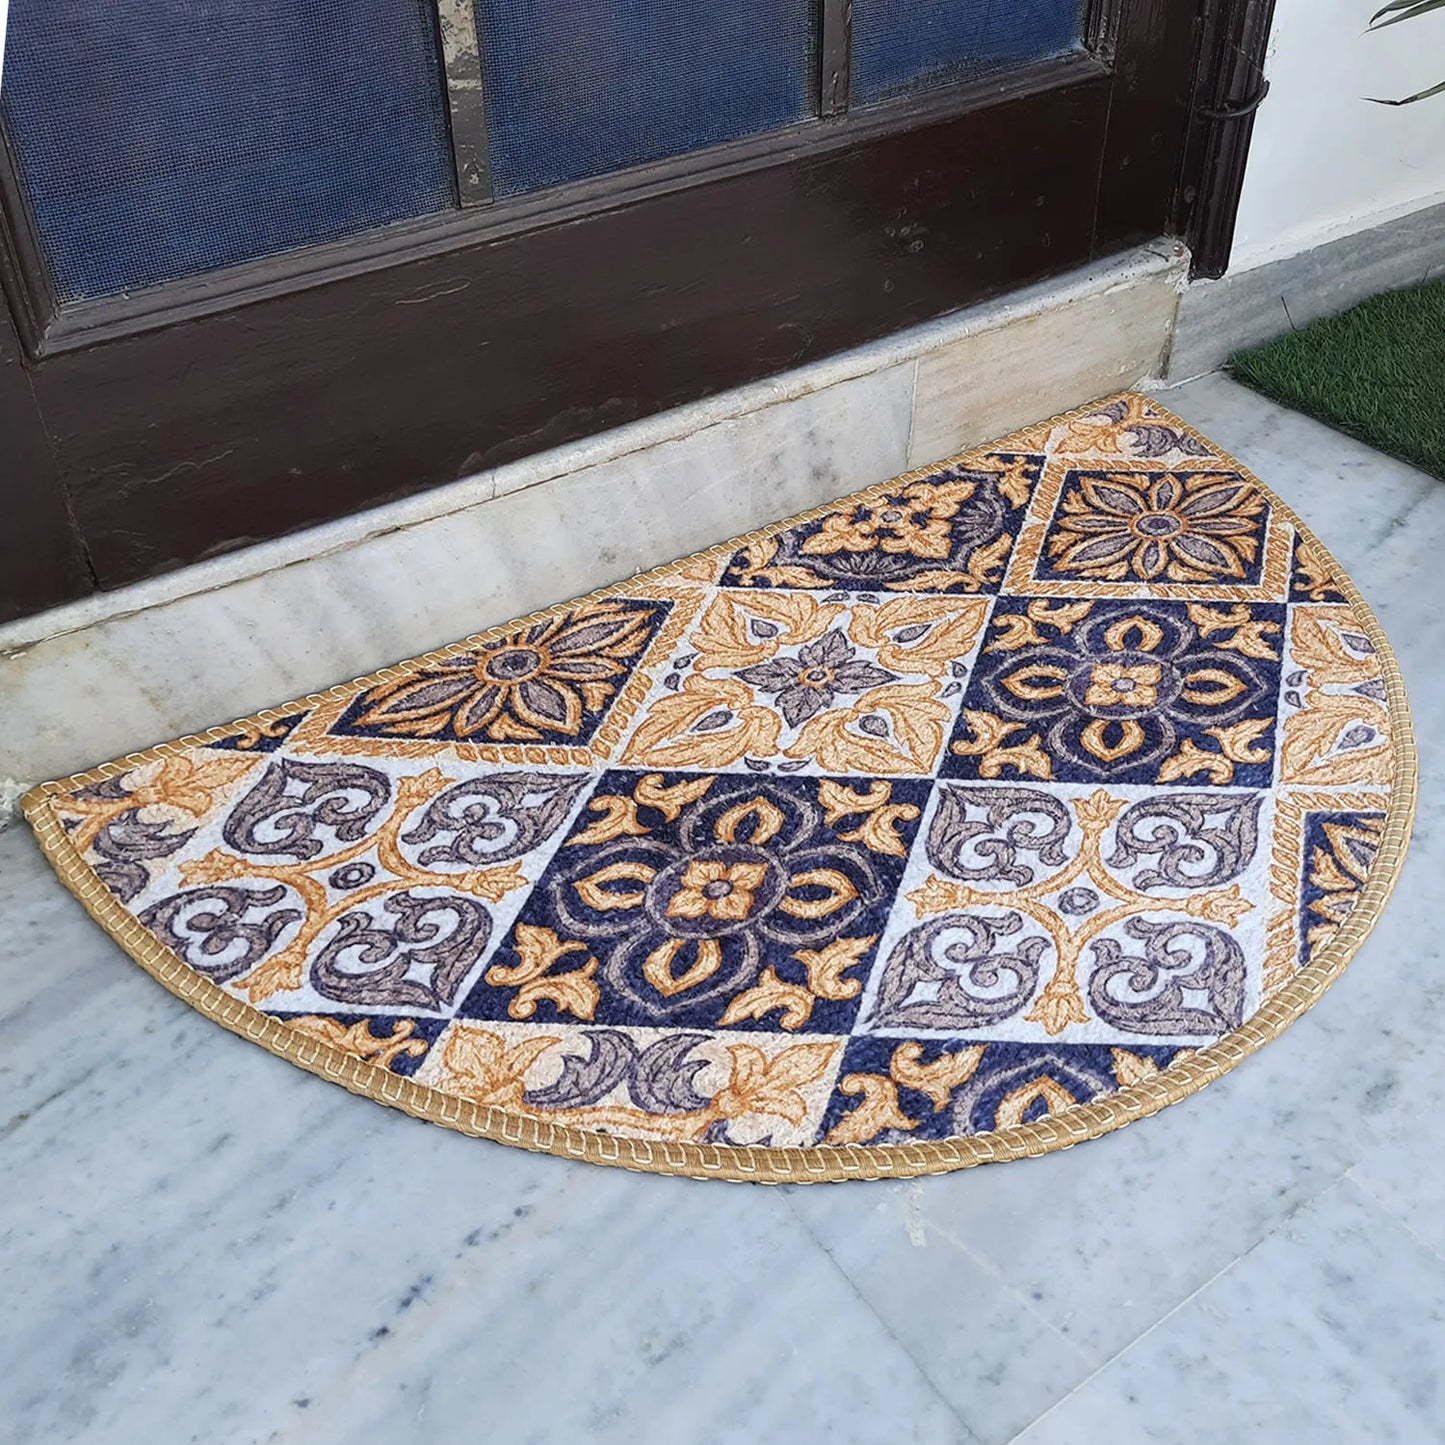 Avioni Home Floor Mats in Beautiful Moroccan Brown Design – Anti Slip, Durable & Washable | Outdoor & Indoor